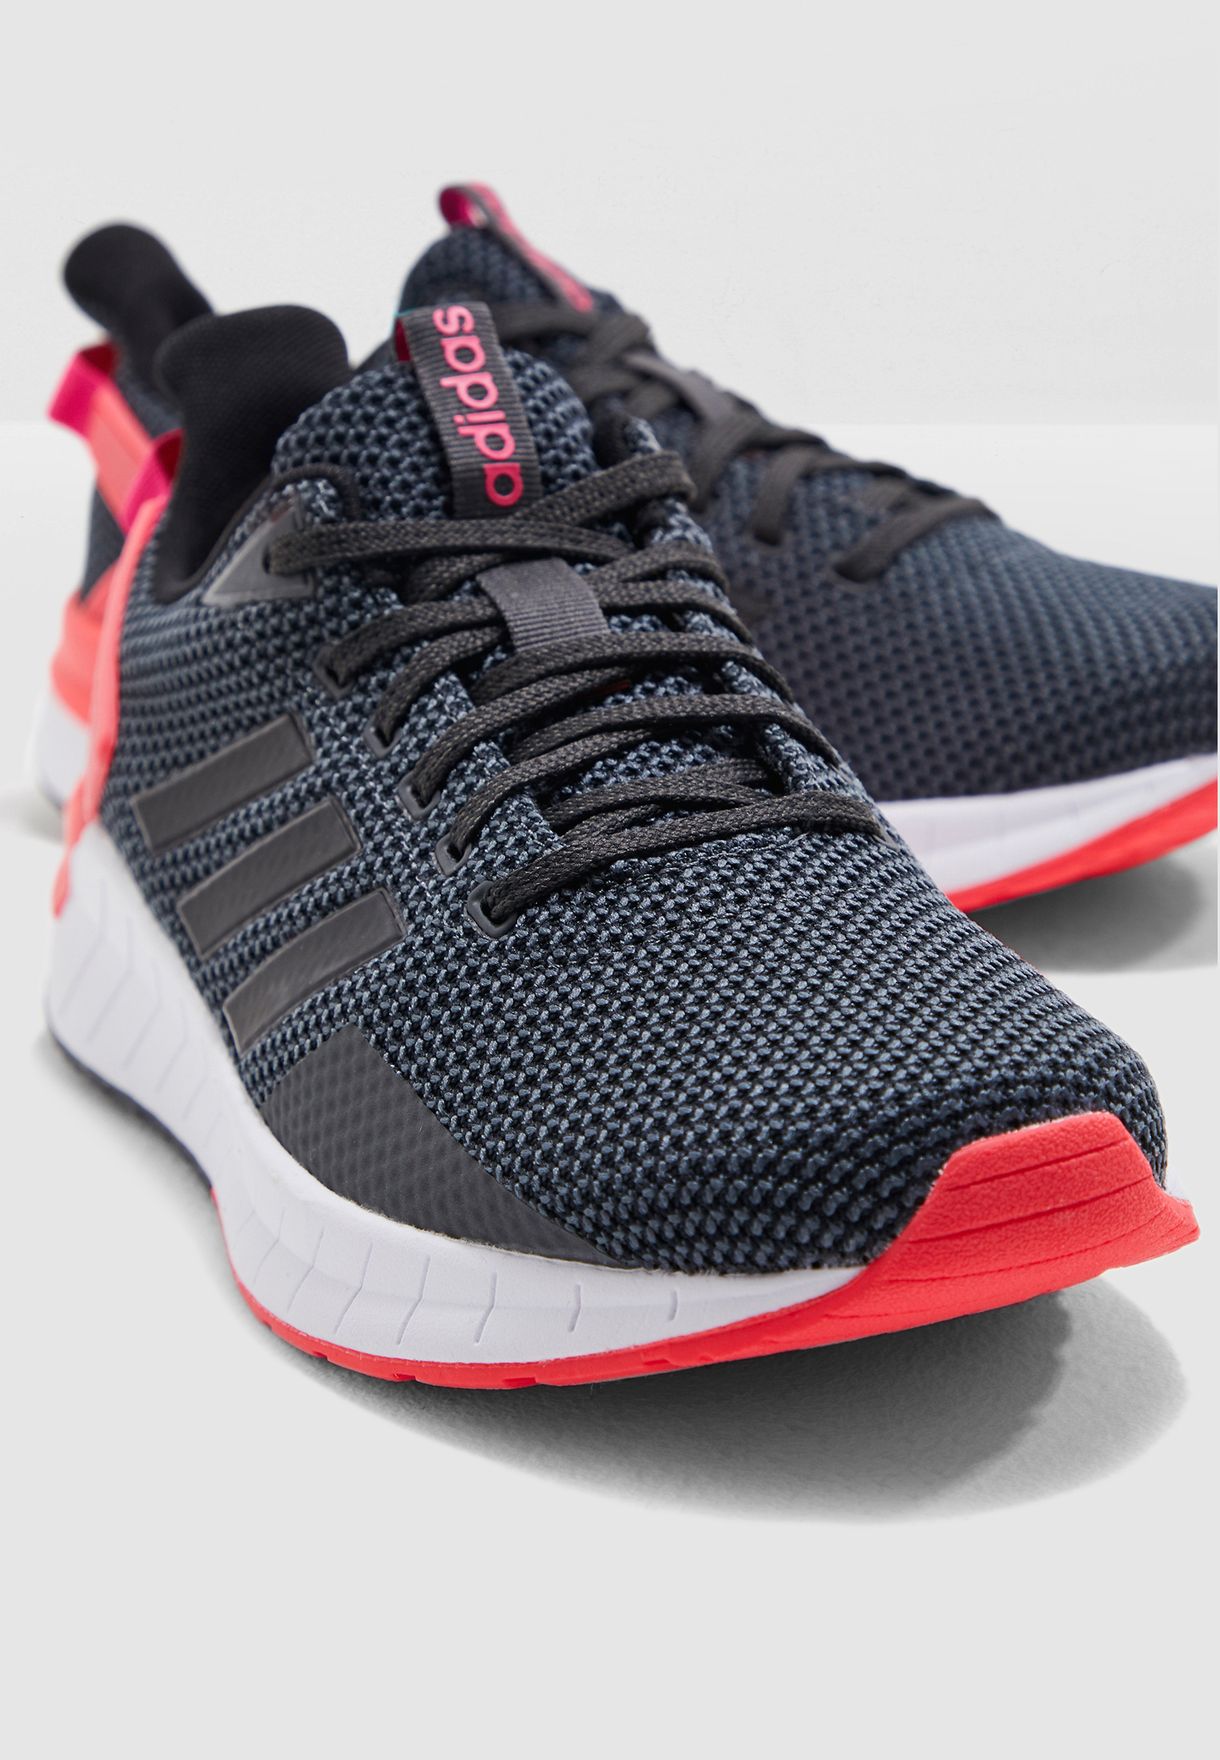 adidas questar ride women's running shoes